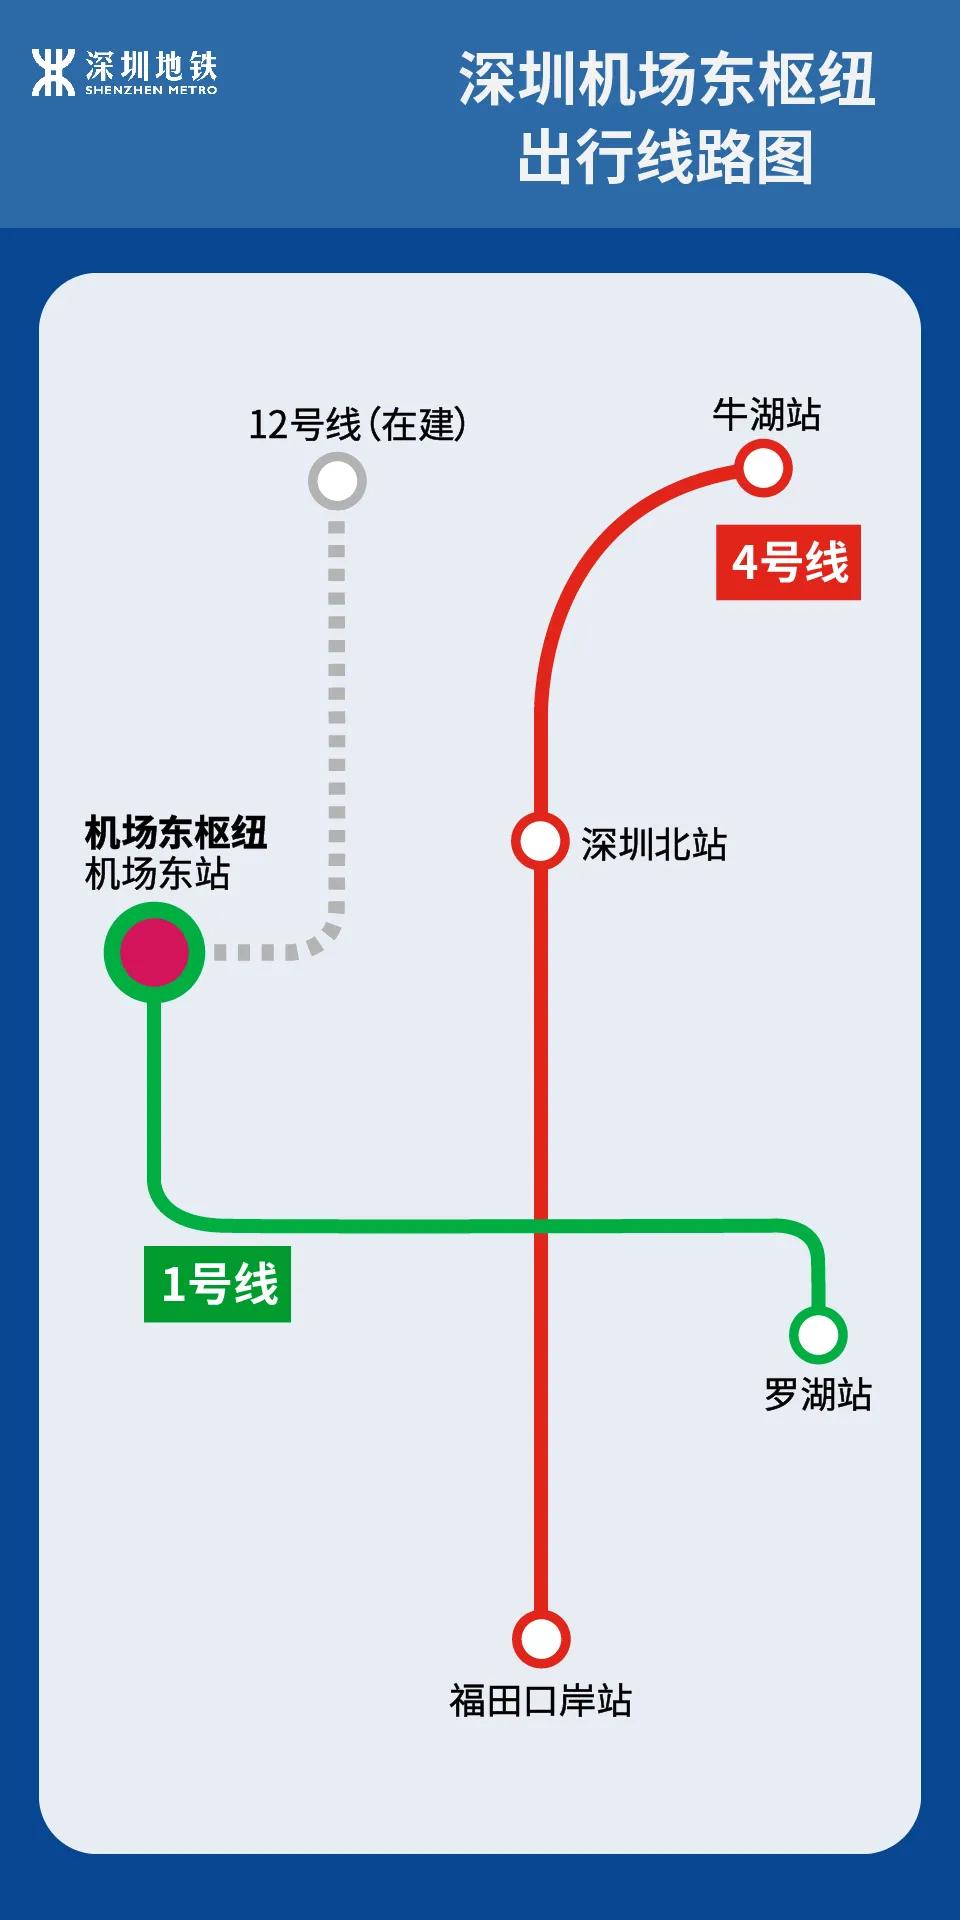 深圳打造大空港片区地铁城际高铁机场无缝连接